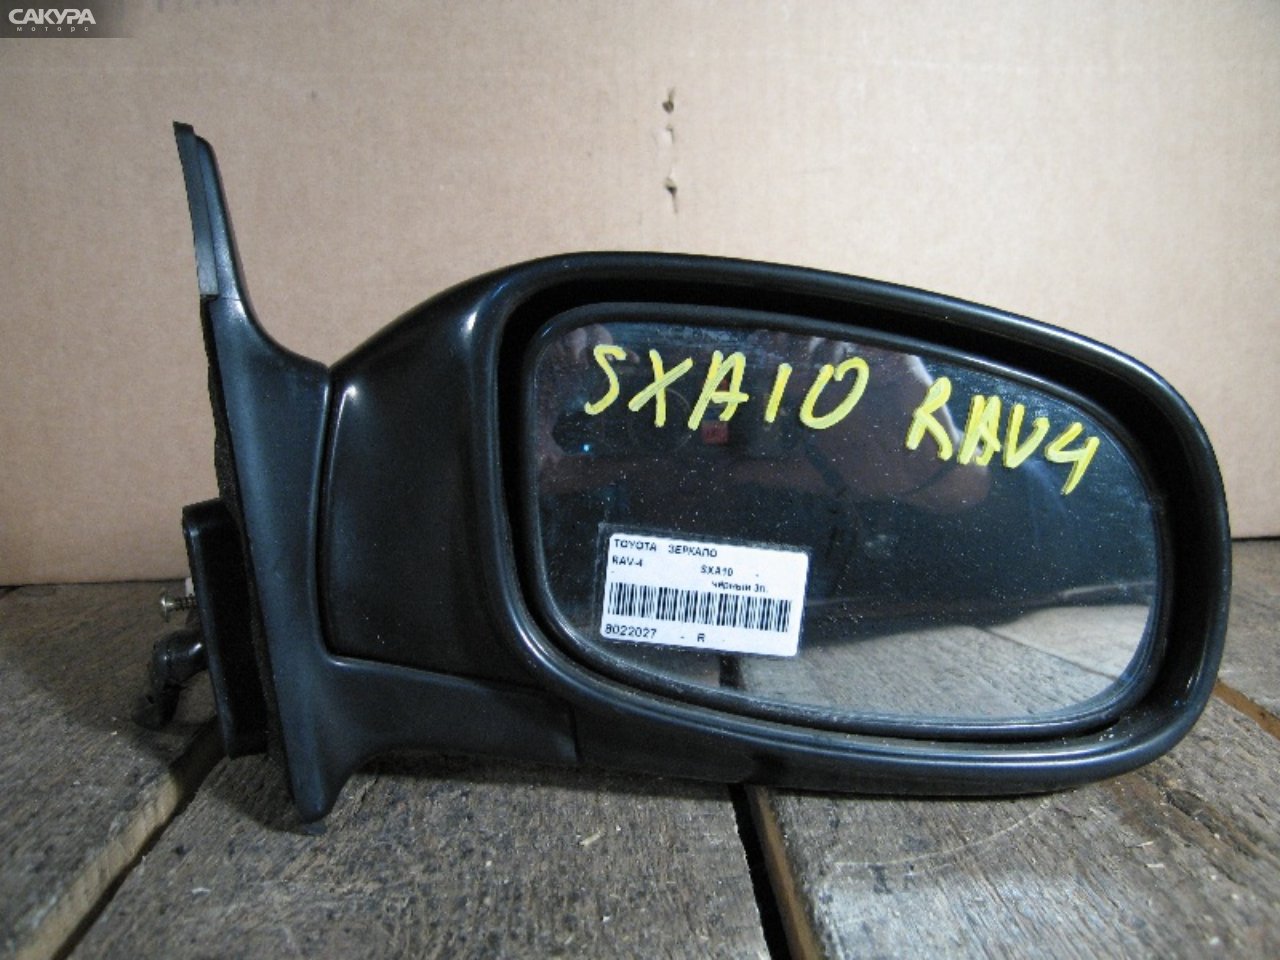 Зеркало боковое правое Toyota RAV4 SXA10C: купить в Сакура Абакан.